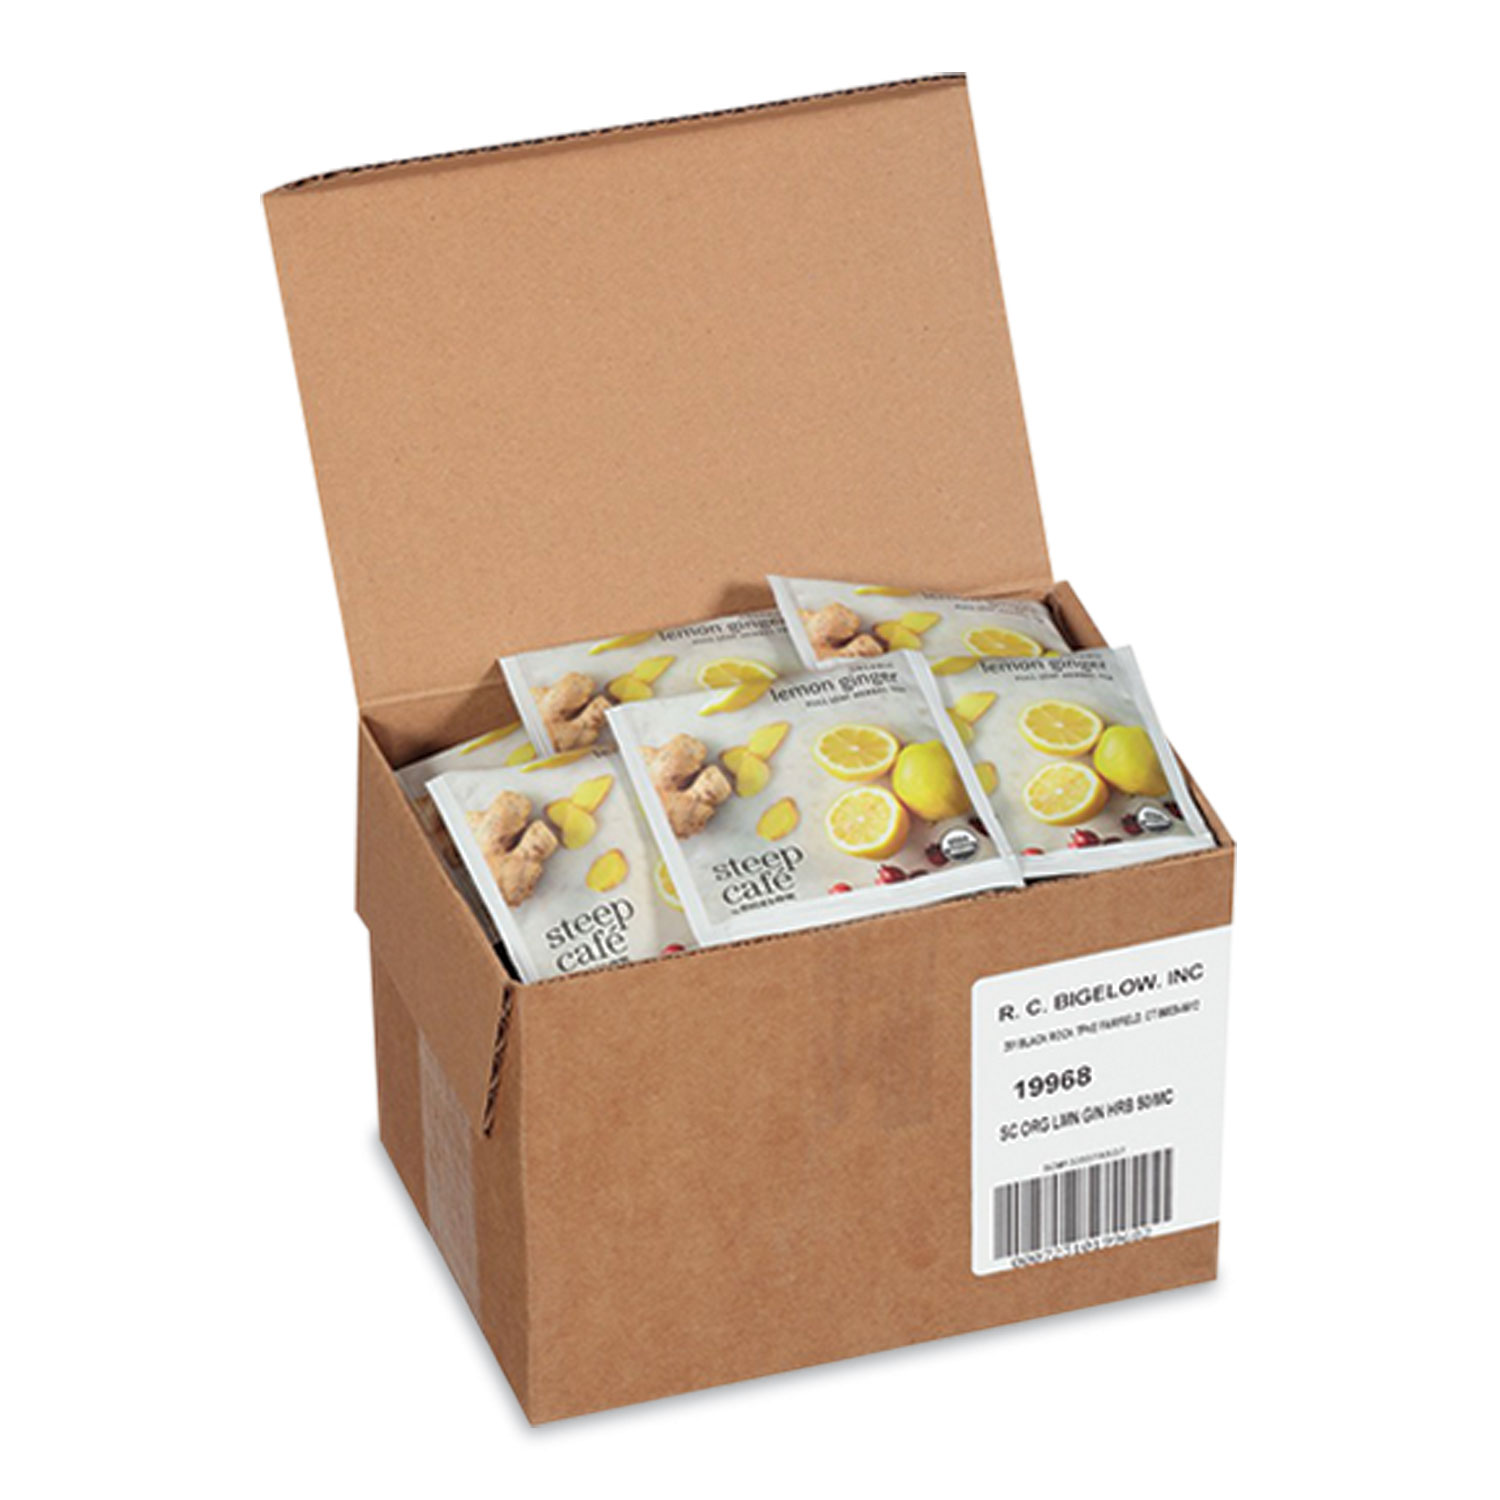 Bigelow® steep Café Organic Herbal Tea, Lemon Ginger, 50 Bags/Carton